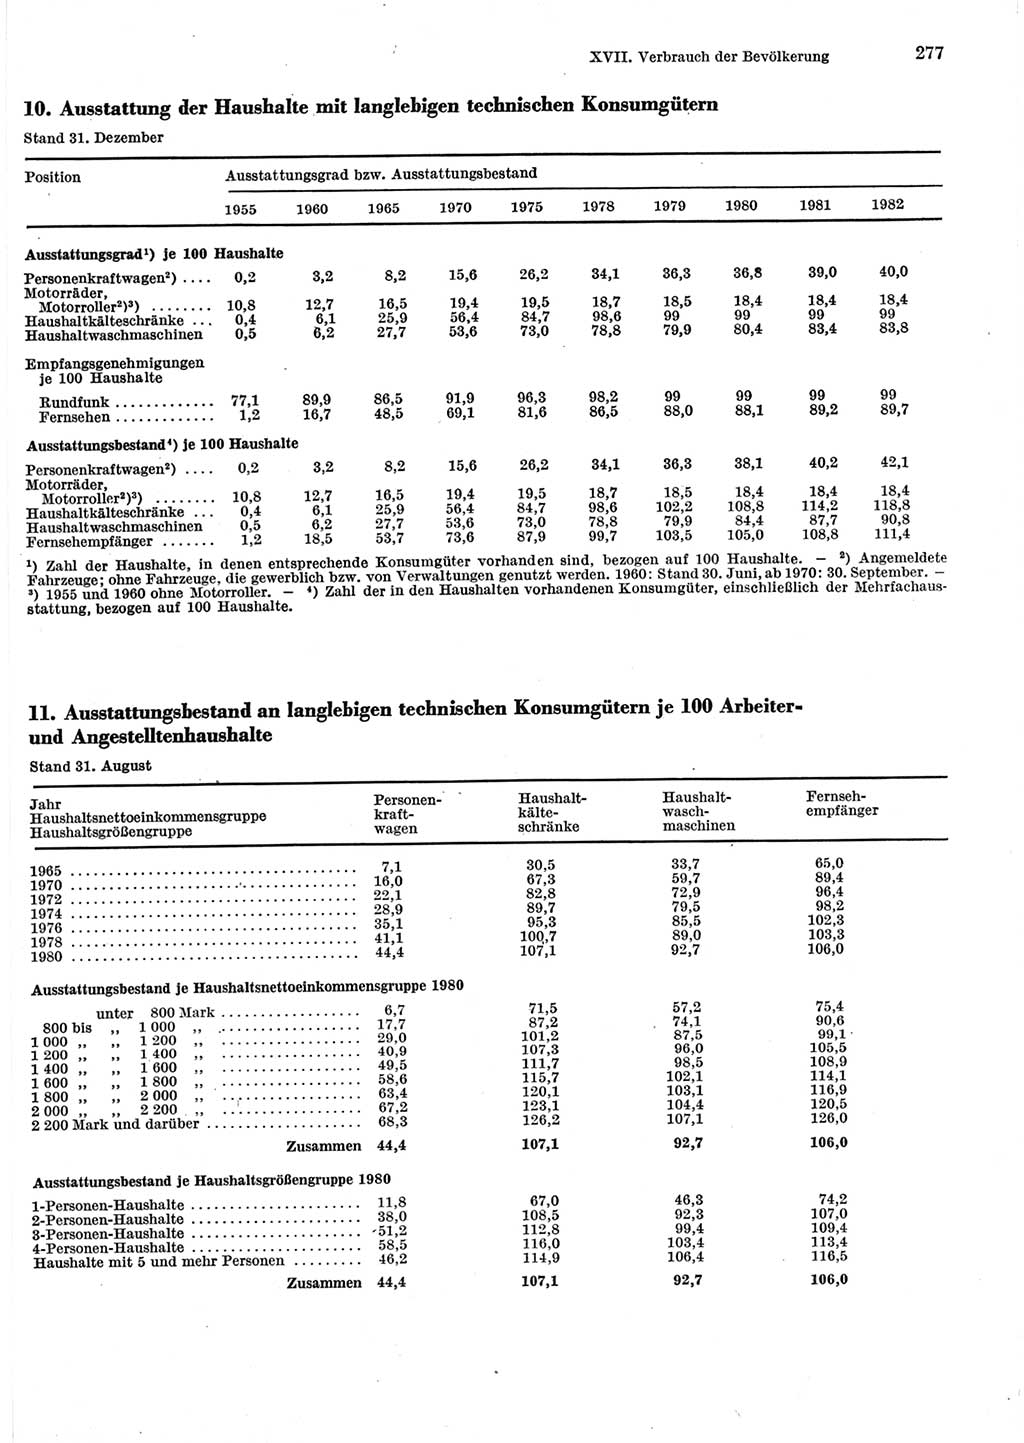 Statistisches Jahrbuch der Deutschen Demokratischen Republik (DDR) 1983, Seite 277 (Stat. Jb. DDR 1983, S. 277)